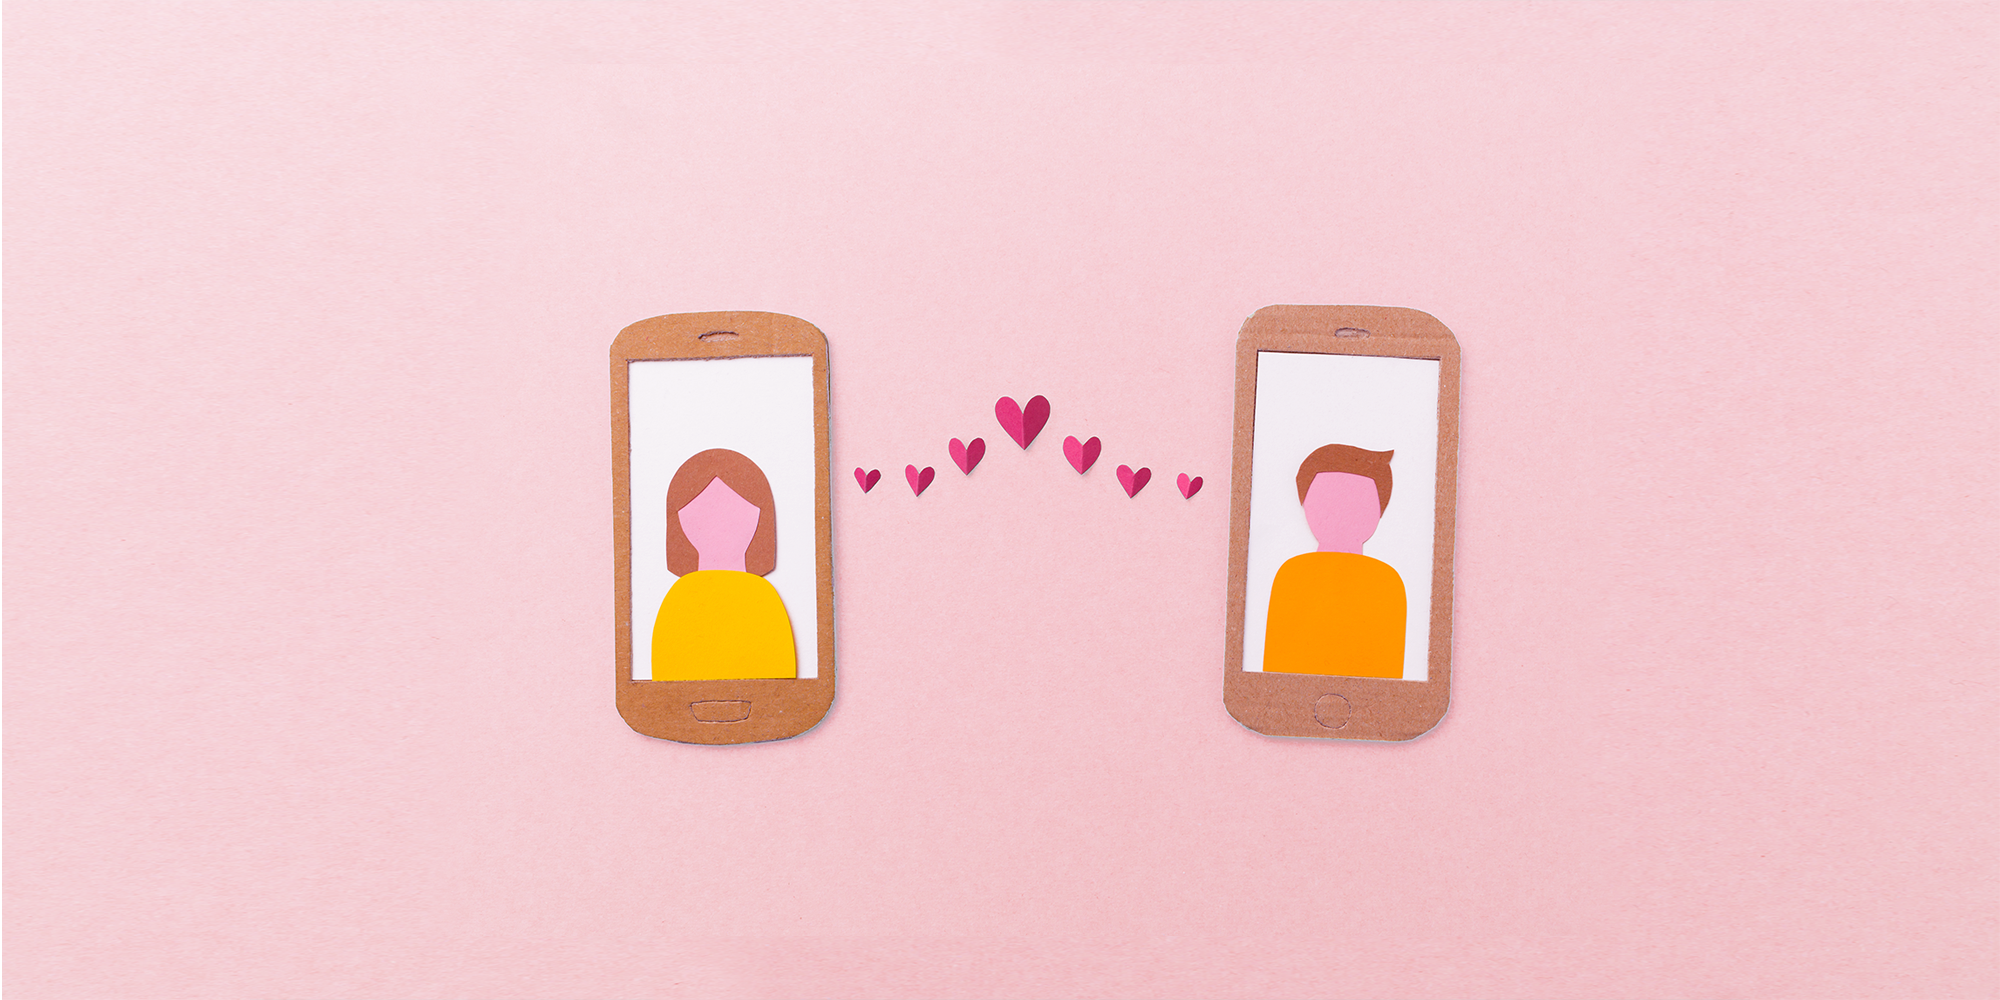 queer dating app deutschland fragen an jungs flirten siegen